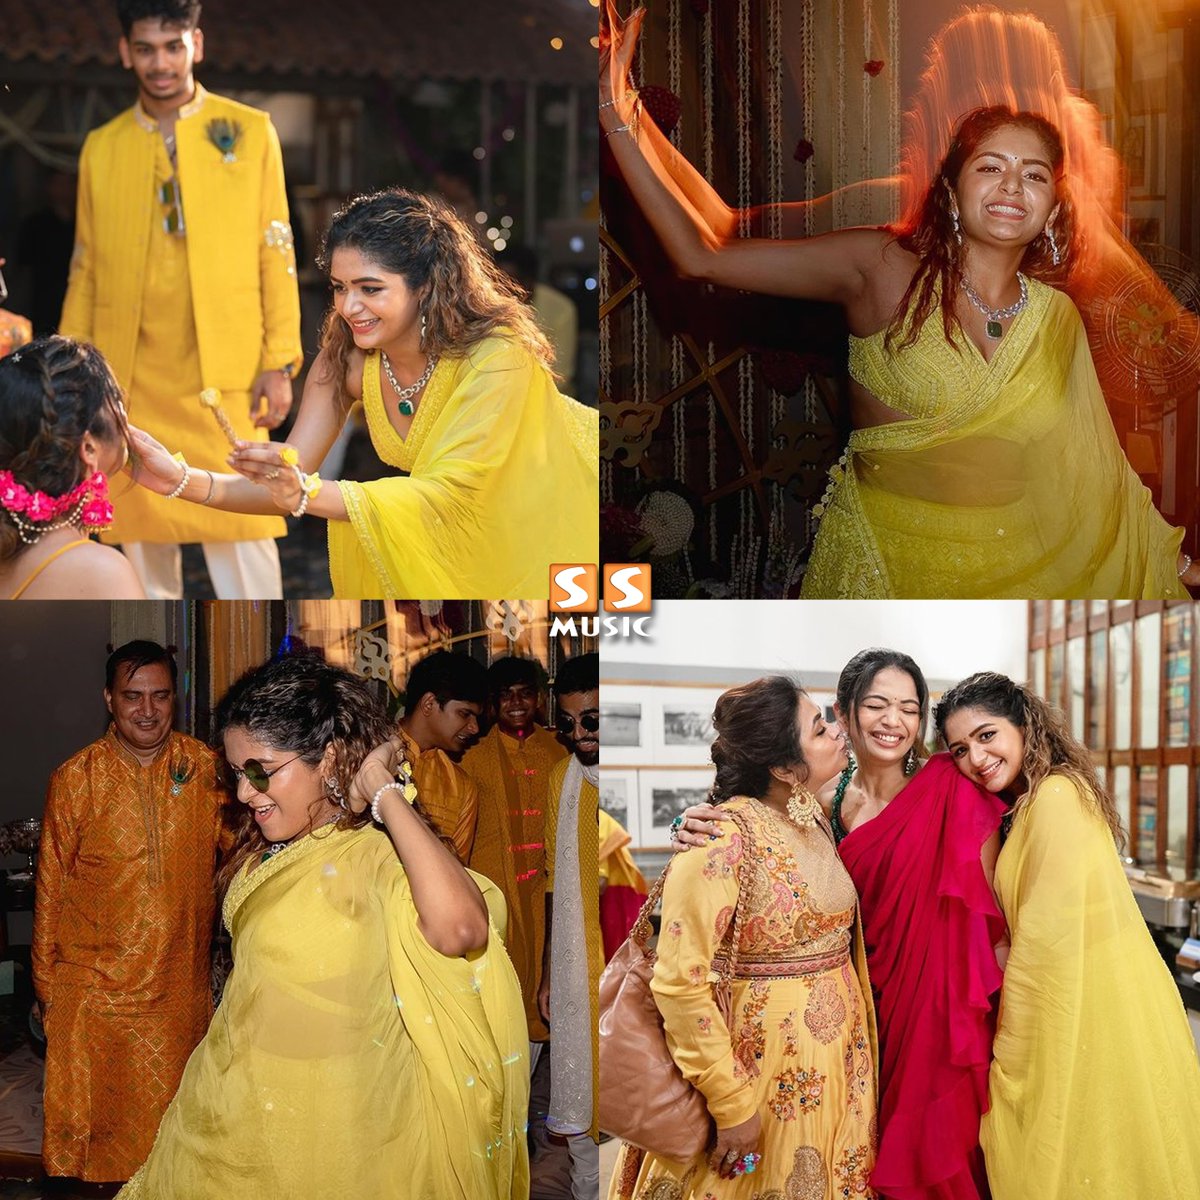 Aditi Shankar, her sister Aishwarya Shankar, and their mother Easwari Shankar make beautiful memories at Aishwarya's haldi ceremony. 😍
.
#AditiShankar  #Shankar #TarunKarthikeyan #AishwaryaShankar #SSMusic